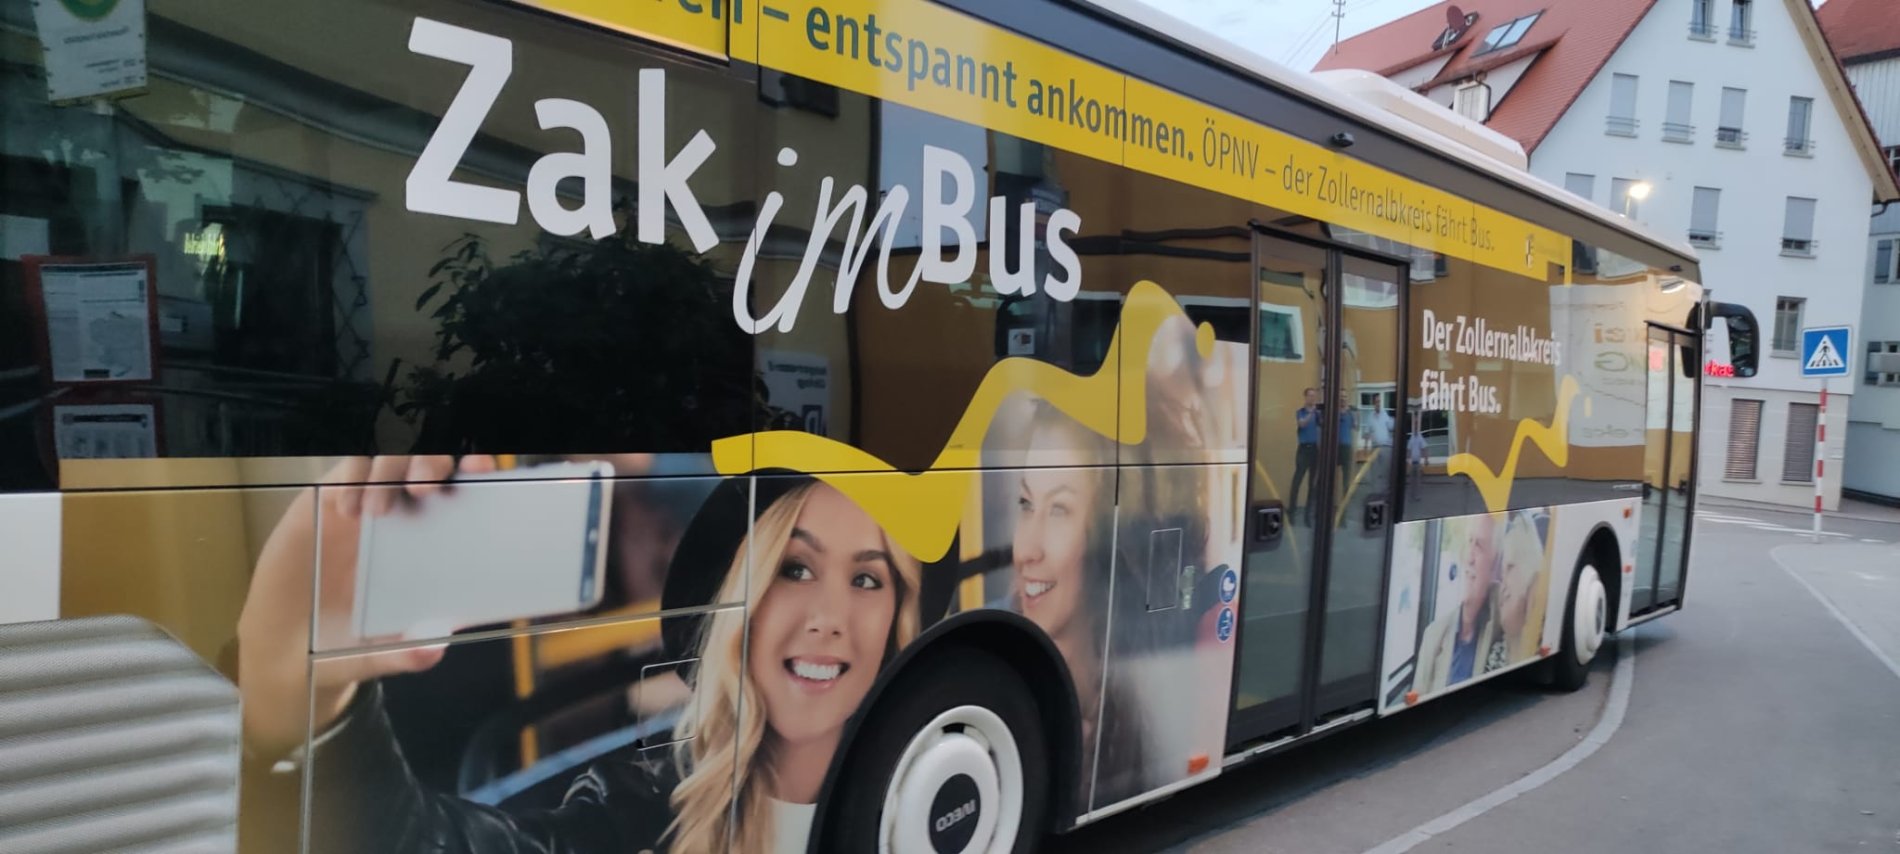 Werbung für "Zak im Bus. Der Zollernalbkreis fährt Bus." auf der Seite eines Busses.